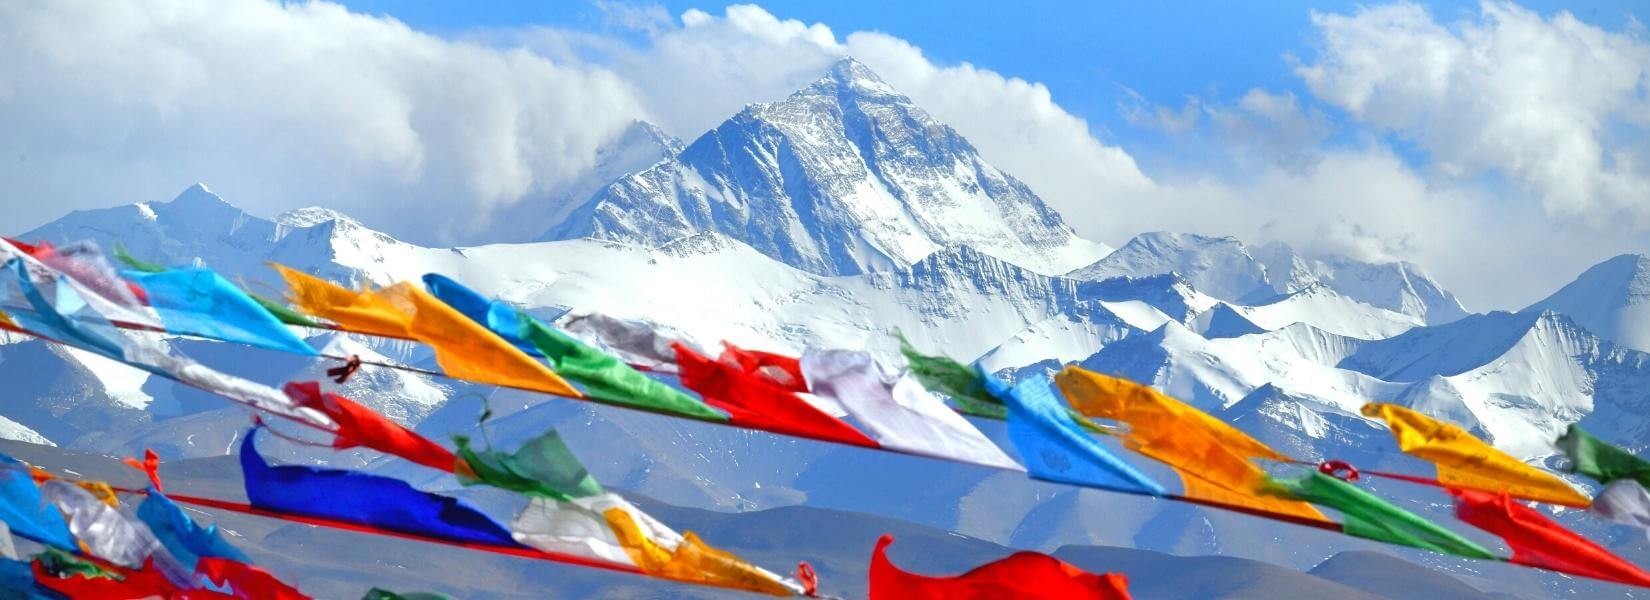 Three Passes Trek | Everest Three Pass Trek - Regulus Nepal